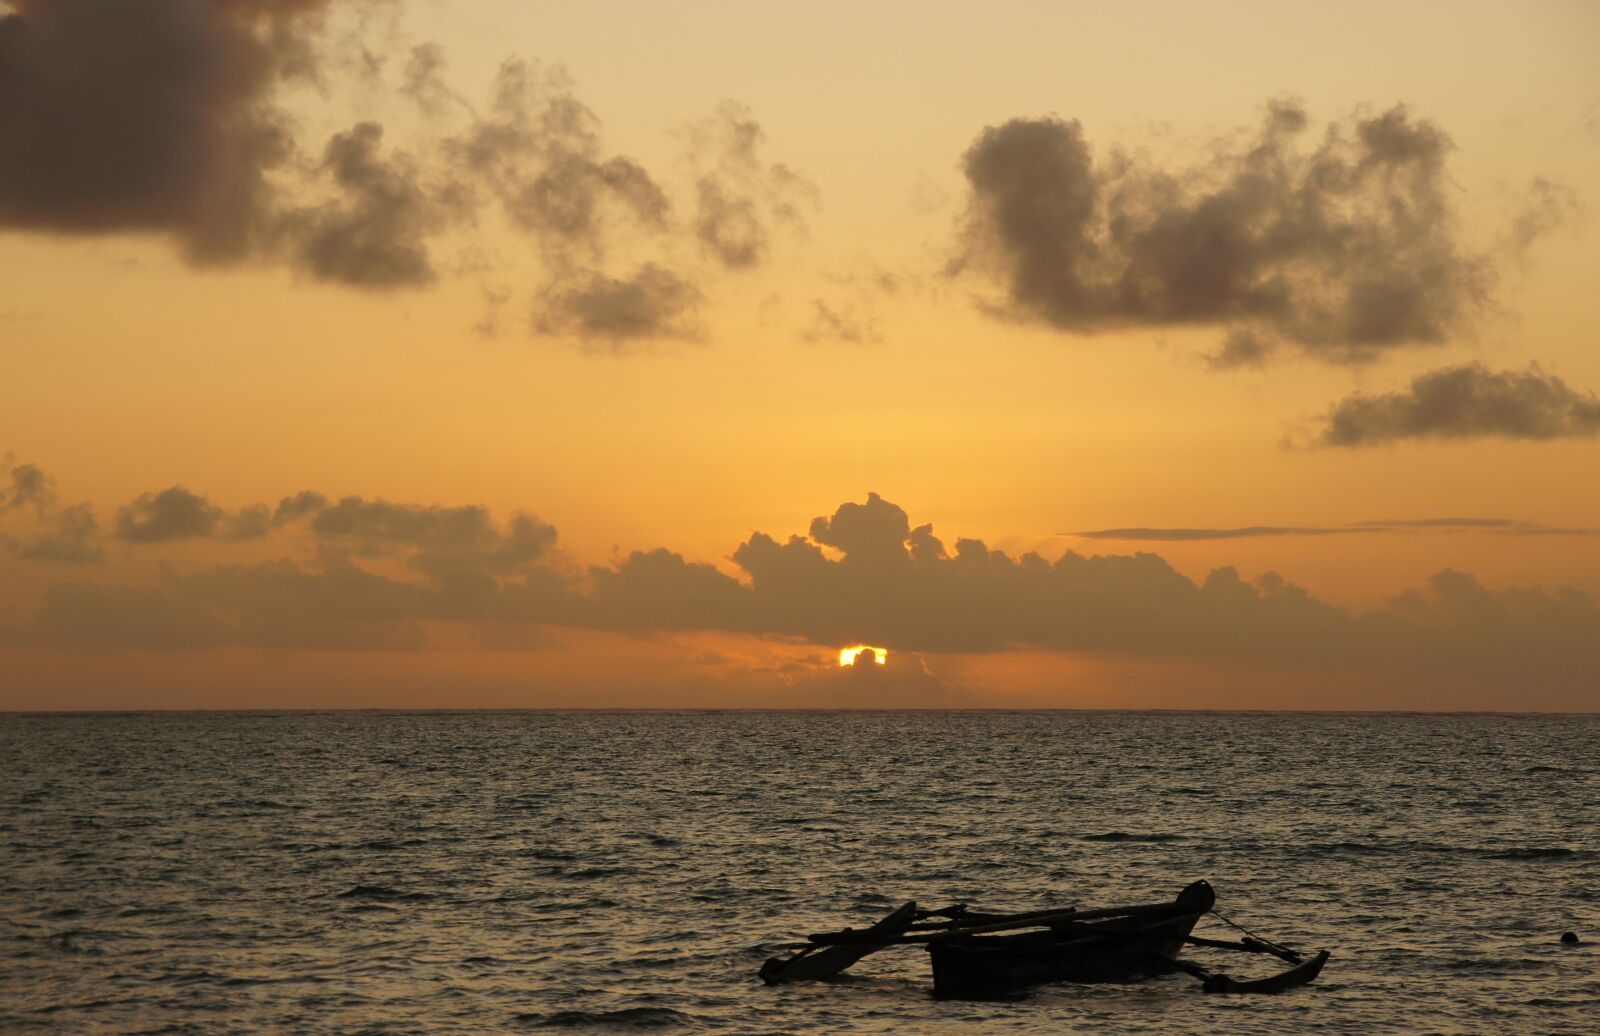 Sony SLT-A33 sample photo. Sunrise, zanzibar, sea photography